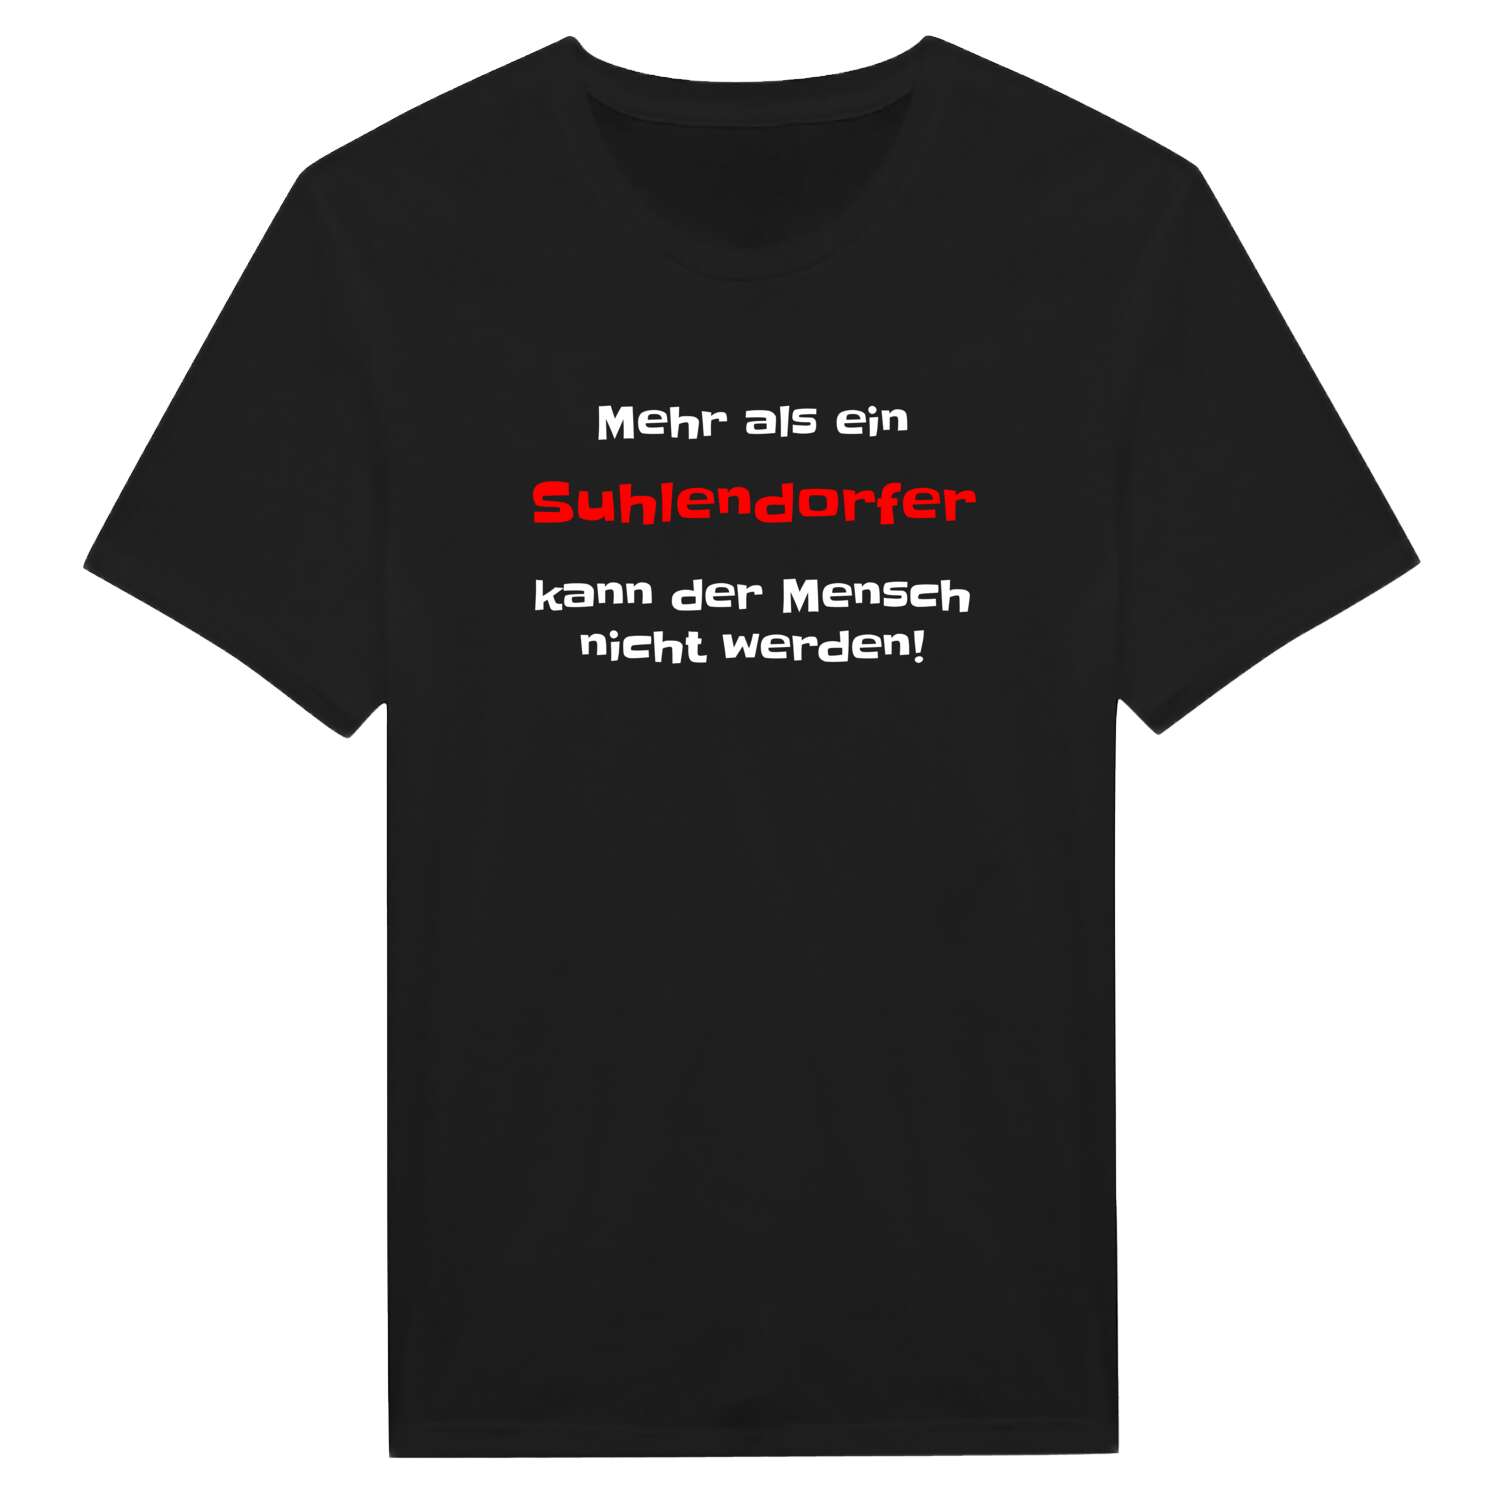 Suhlendorf T-Shirt »Mehr als ein«